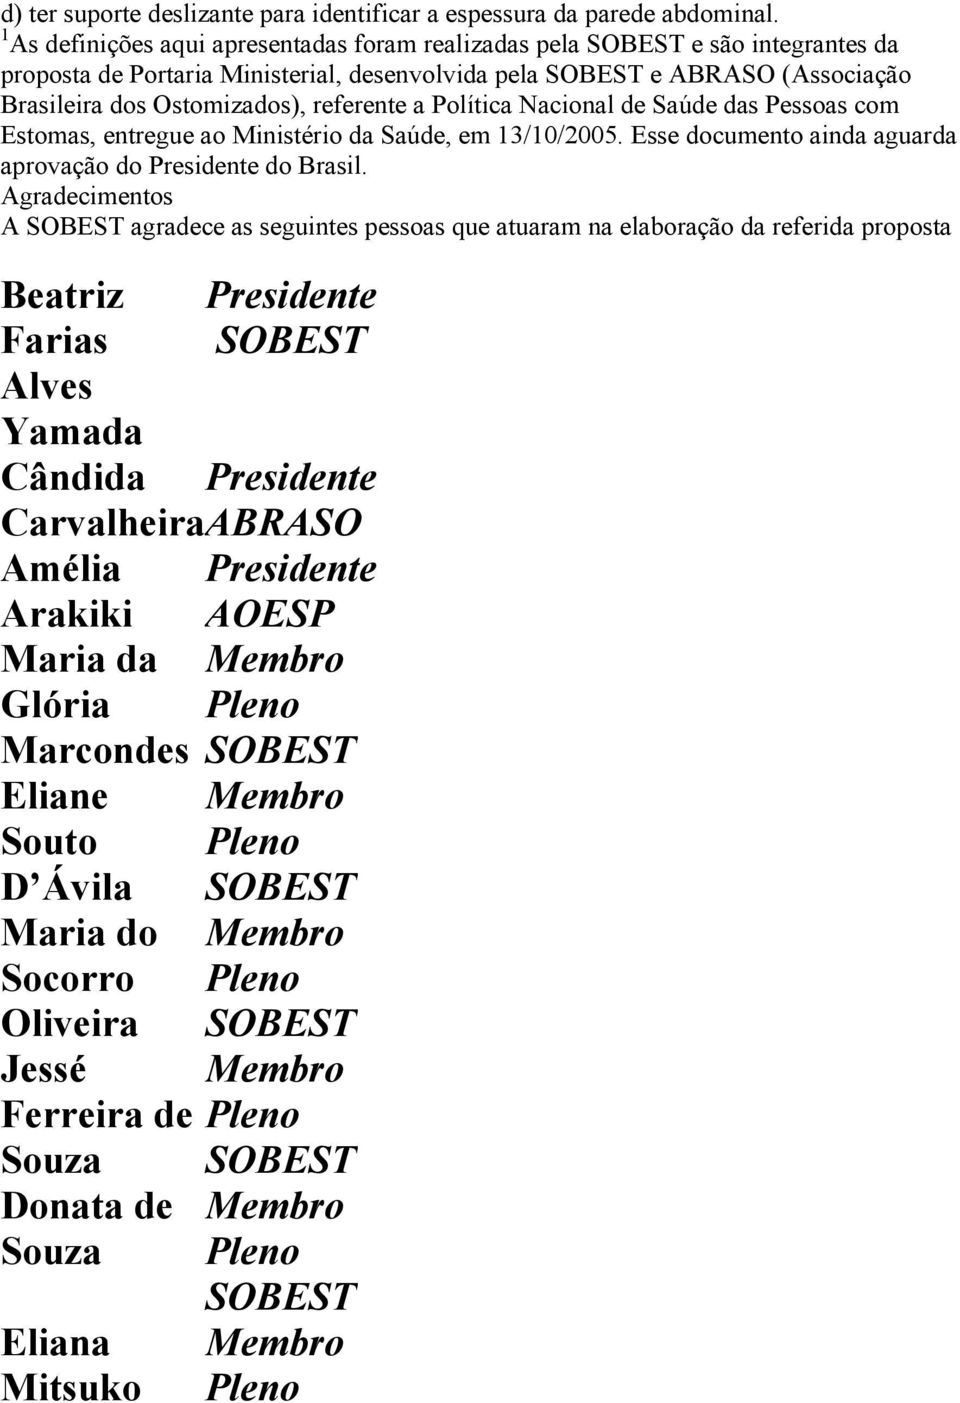 Política Nacional de Saúde das Pessoas com Estomas, entregue ao Ministério da Saúde, em 13/10/2005. Esse documento ainda aguarda aprovação do Presidente do Brasil.